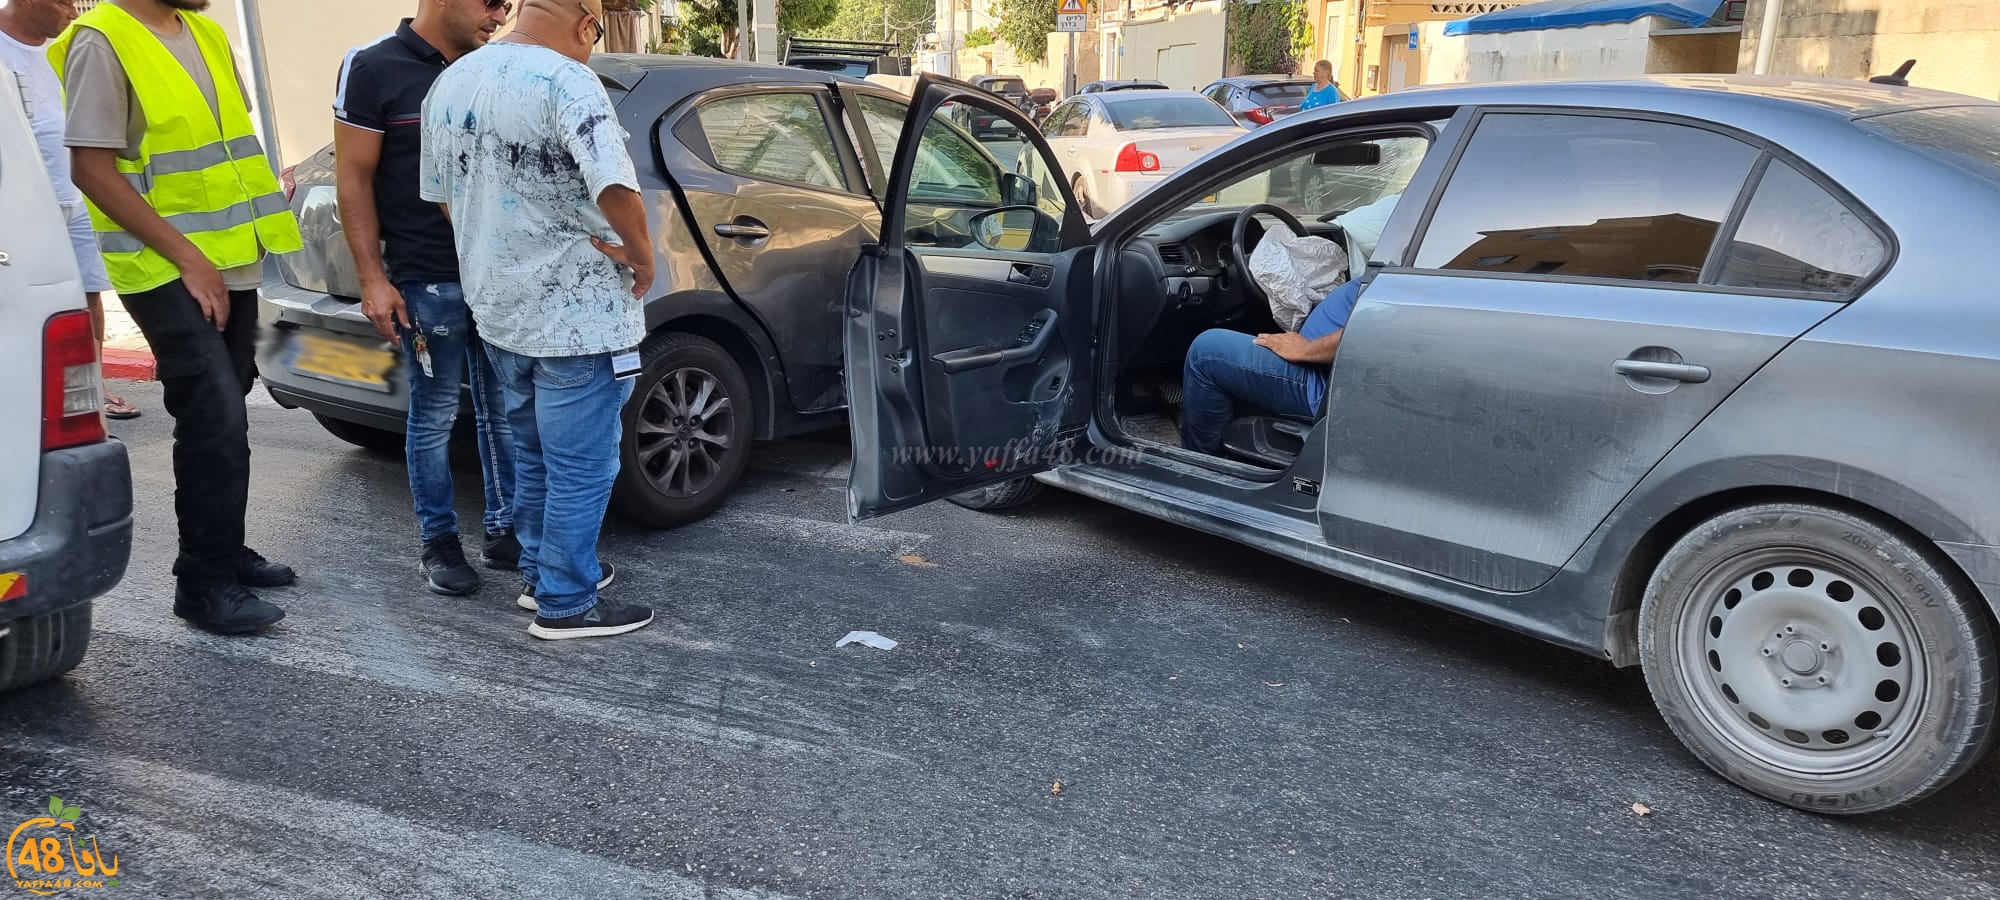  يافا: 4 اصابات طفيفة بحادث طرق بين مركبتين 